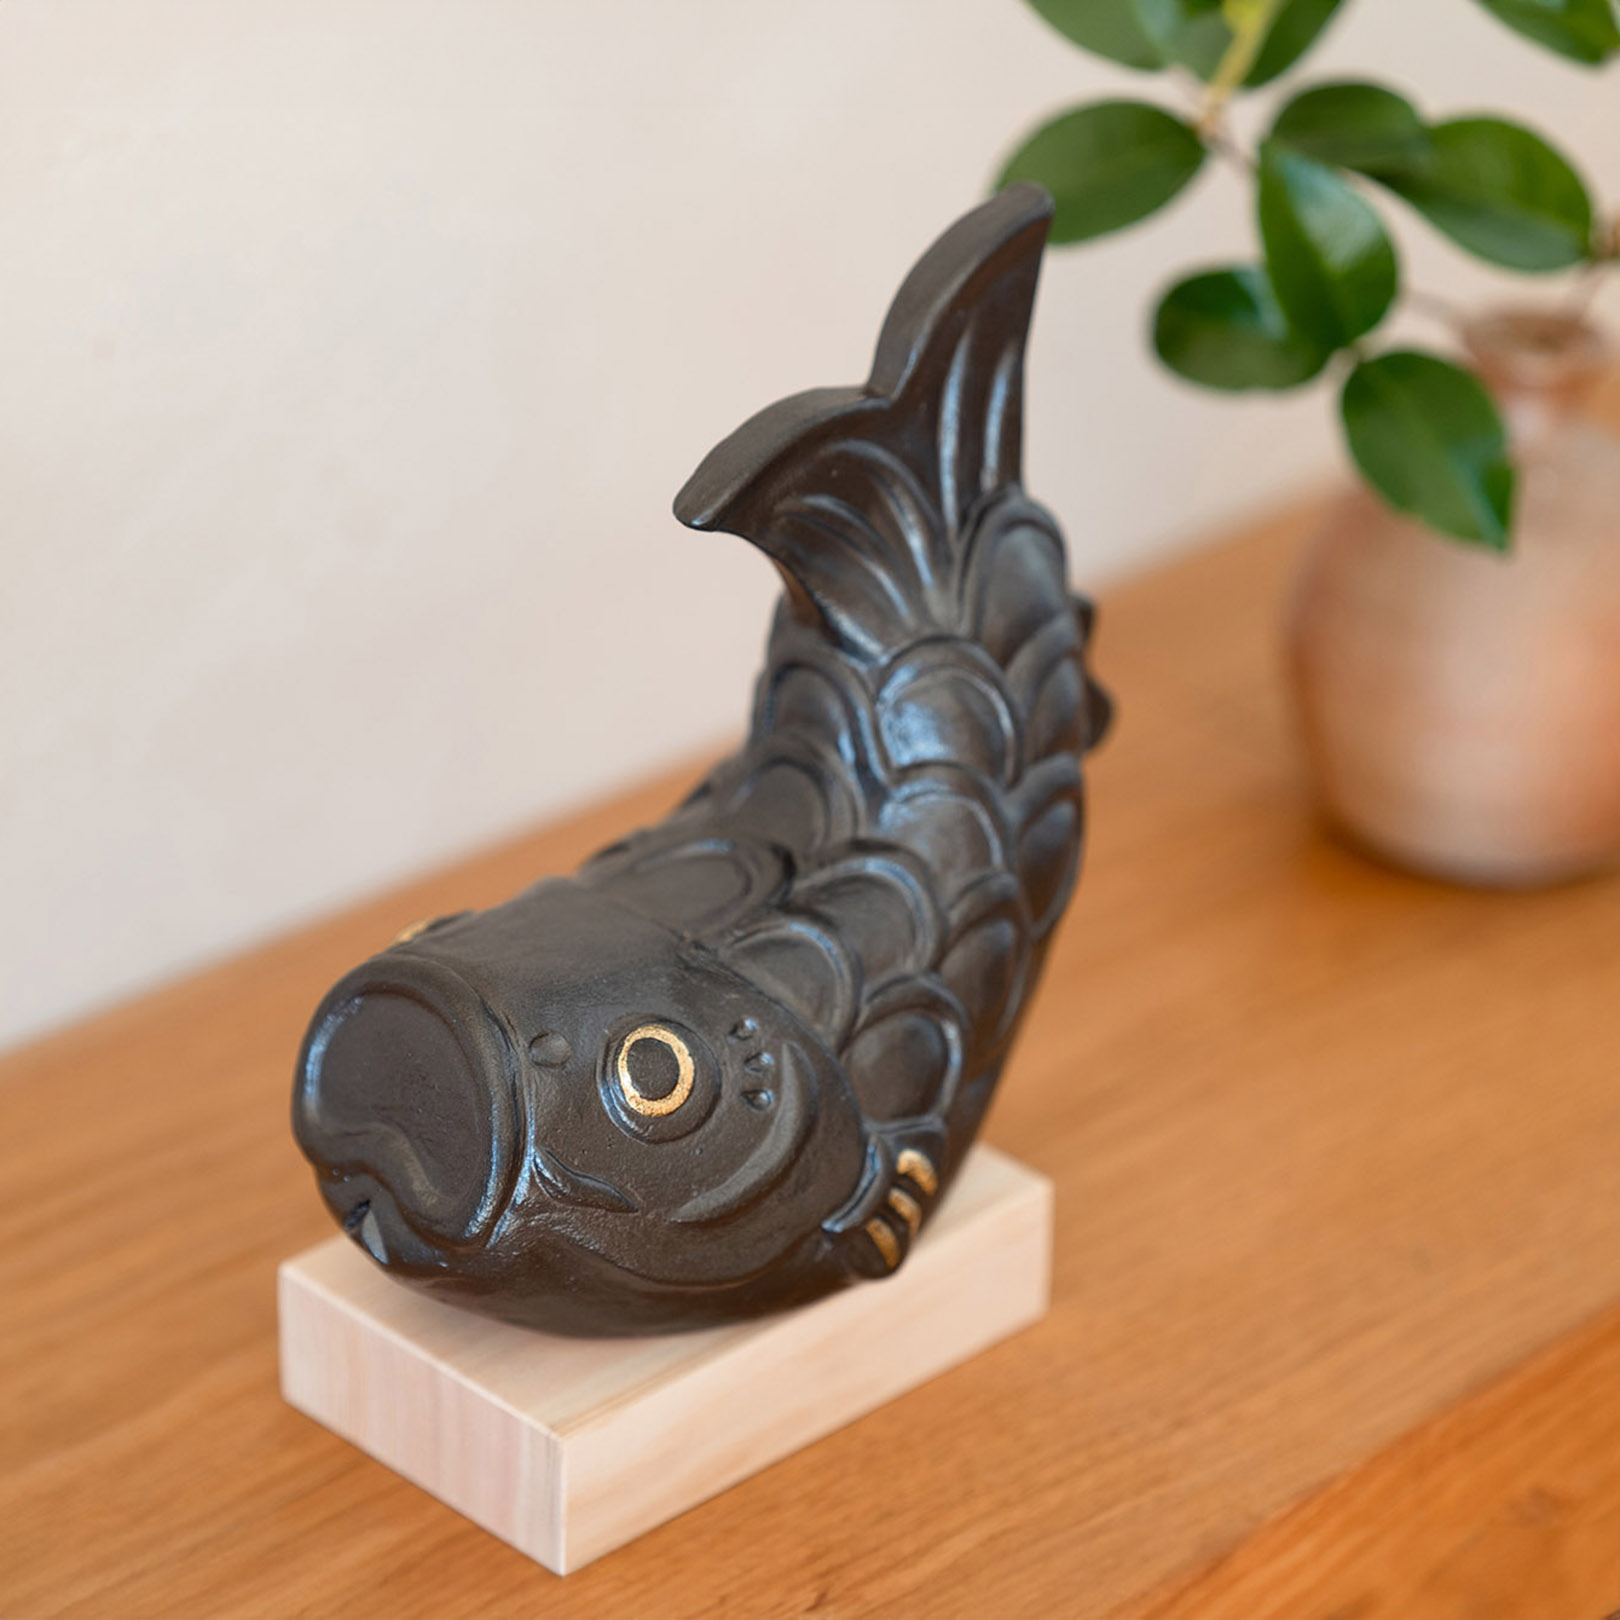 信楽焼の陶器の鯉のぼり飾り付けの様子